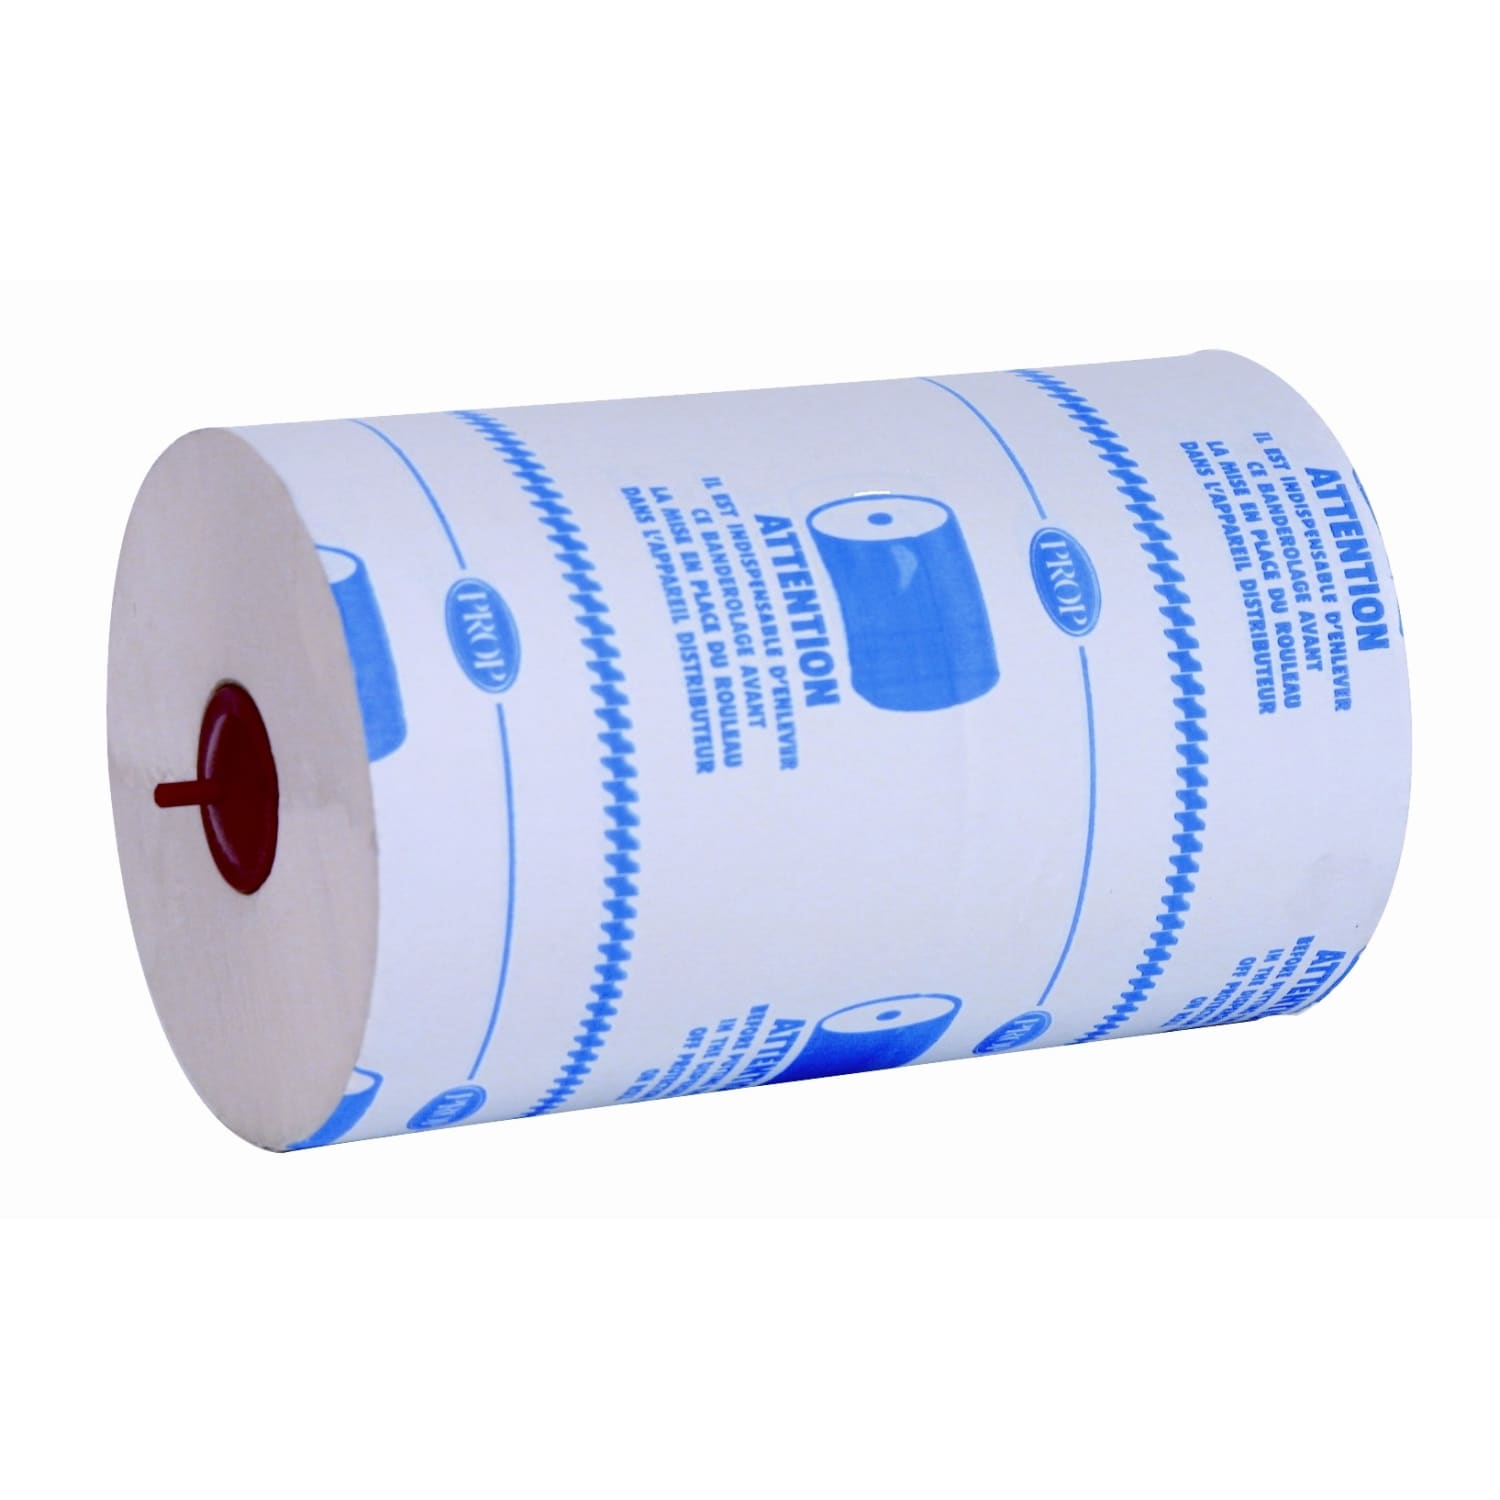 Rouleau papier atelier, bobine de 150 m. 2 plis certifié Ecolabel - Action  karti